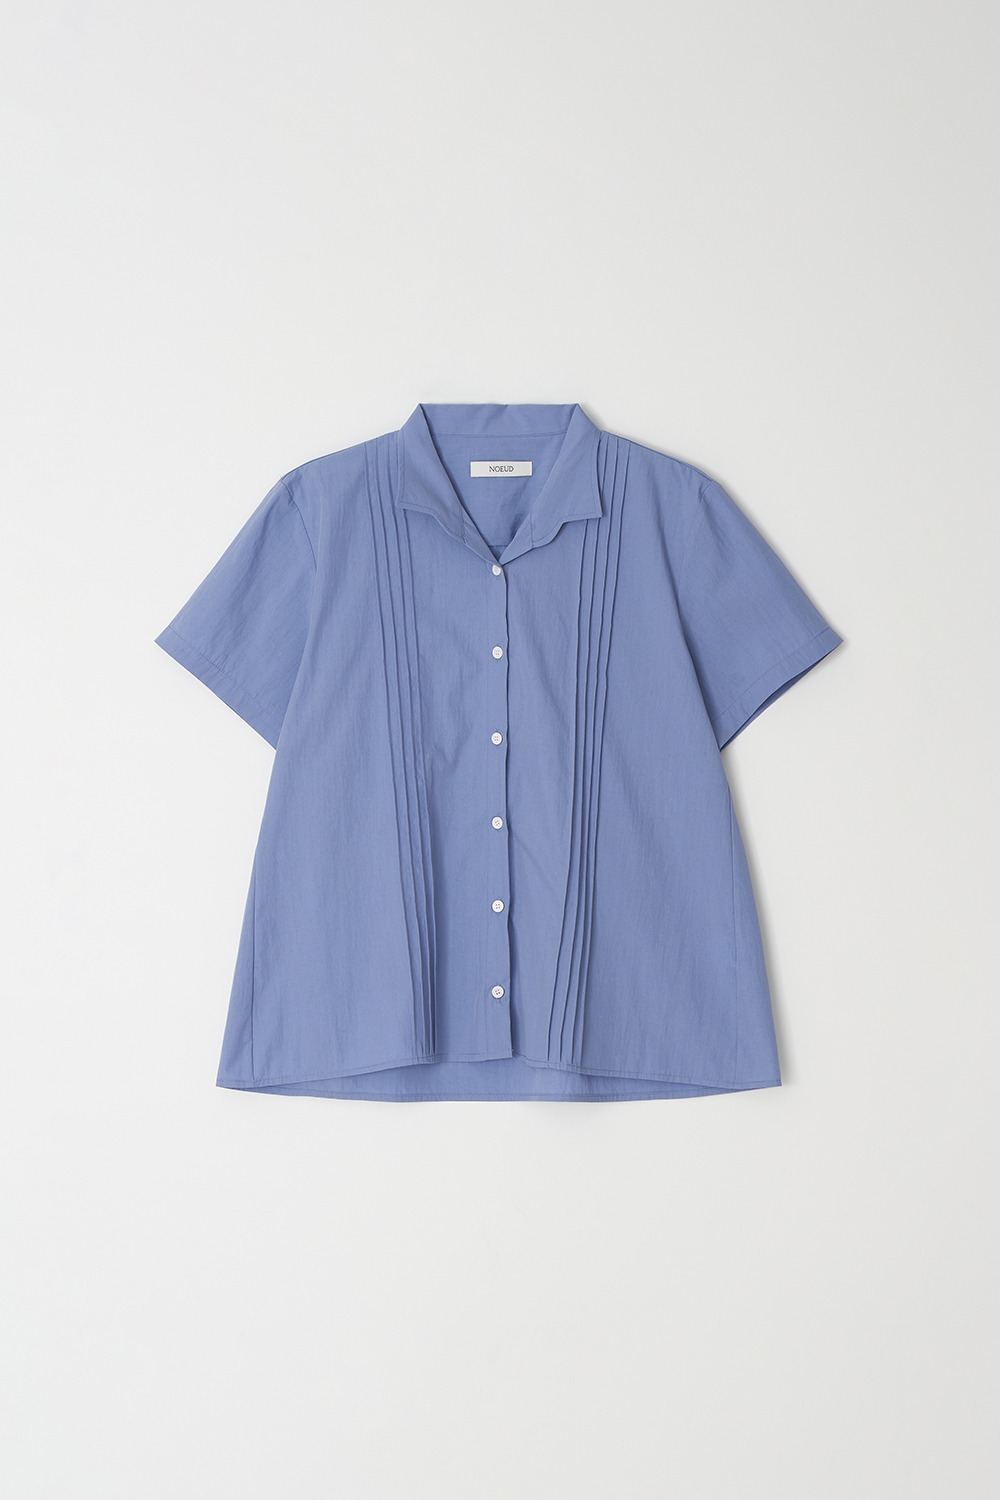 Pintuck short-sleeved shirt (Blue)